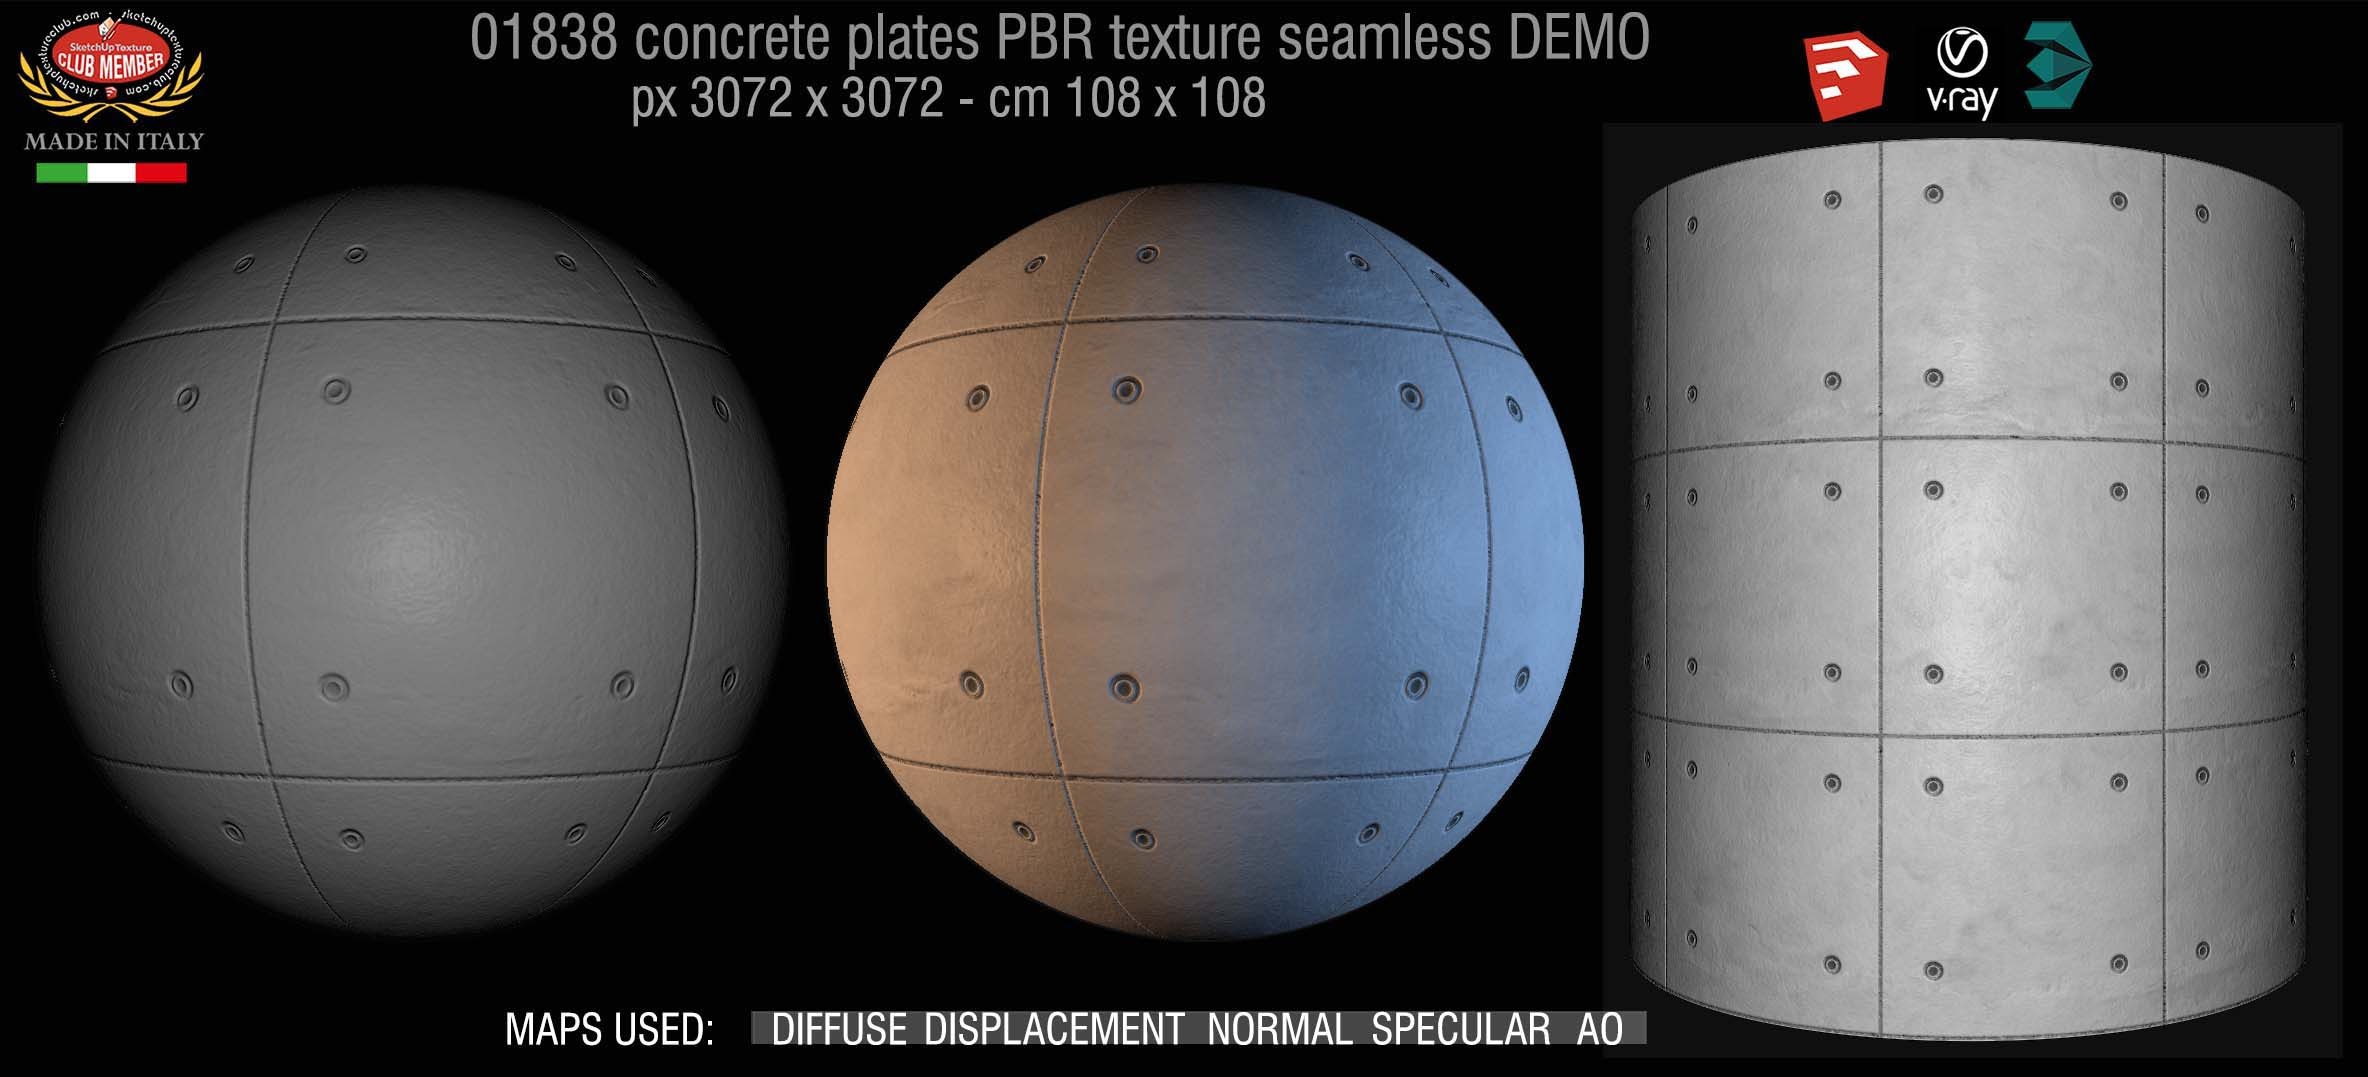 01838 Tadao Ando concrete plates PBR texture seamless DEMO